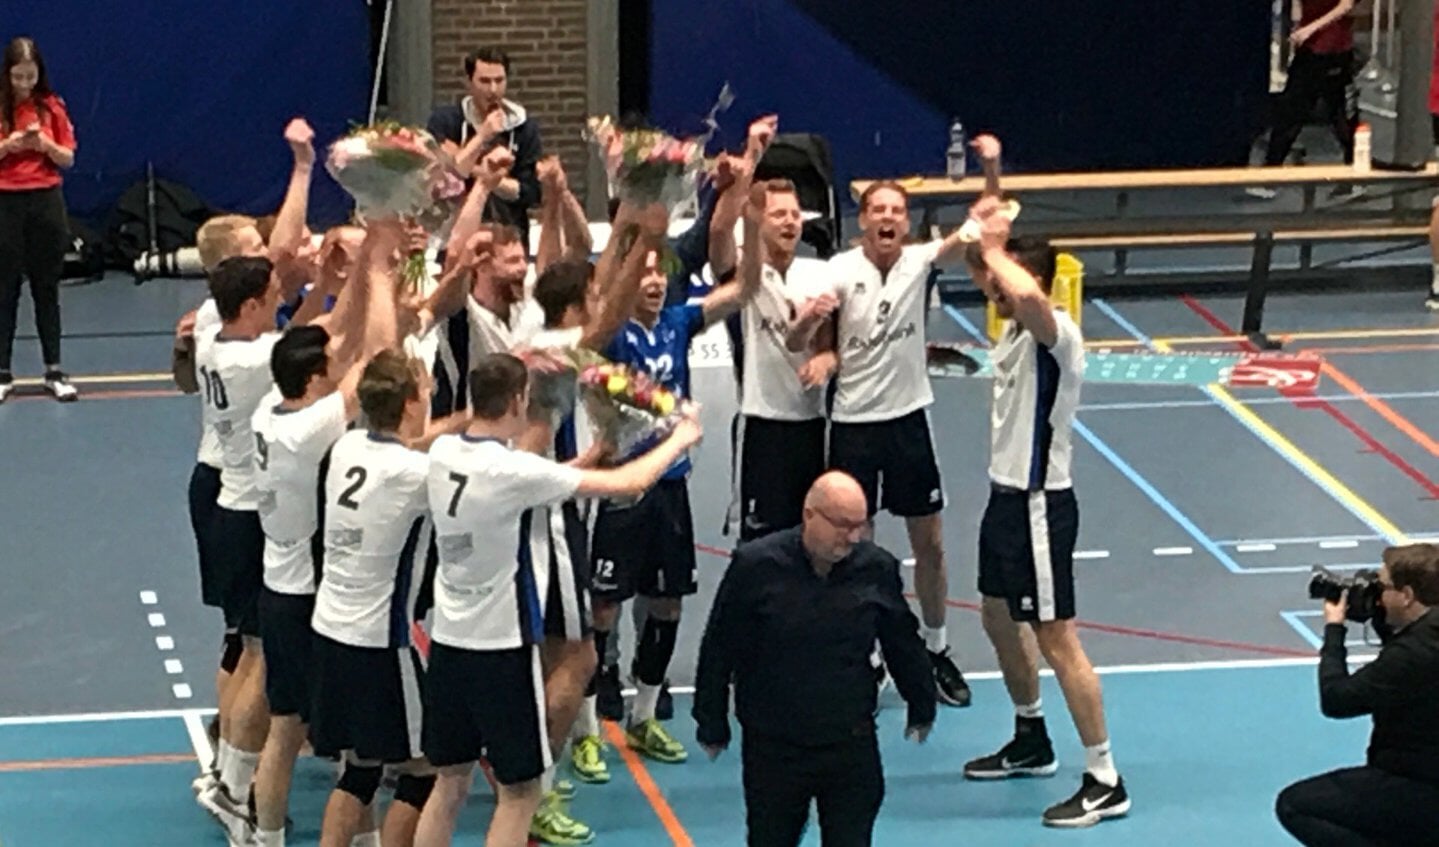 De heren werden in 2018 kampioen, waardoor ze promoveerden naar de Eredivisie